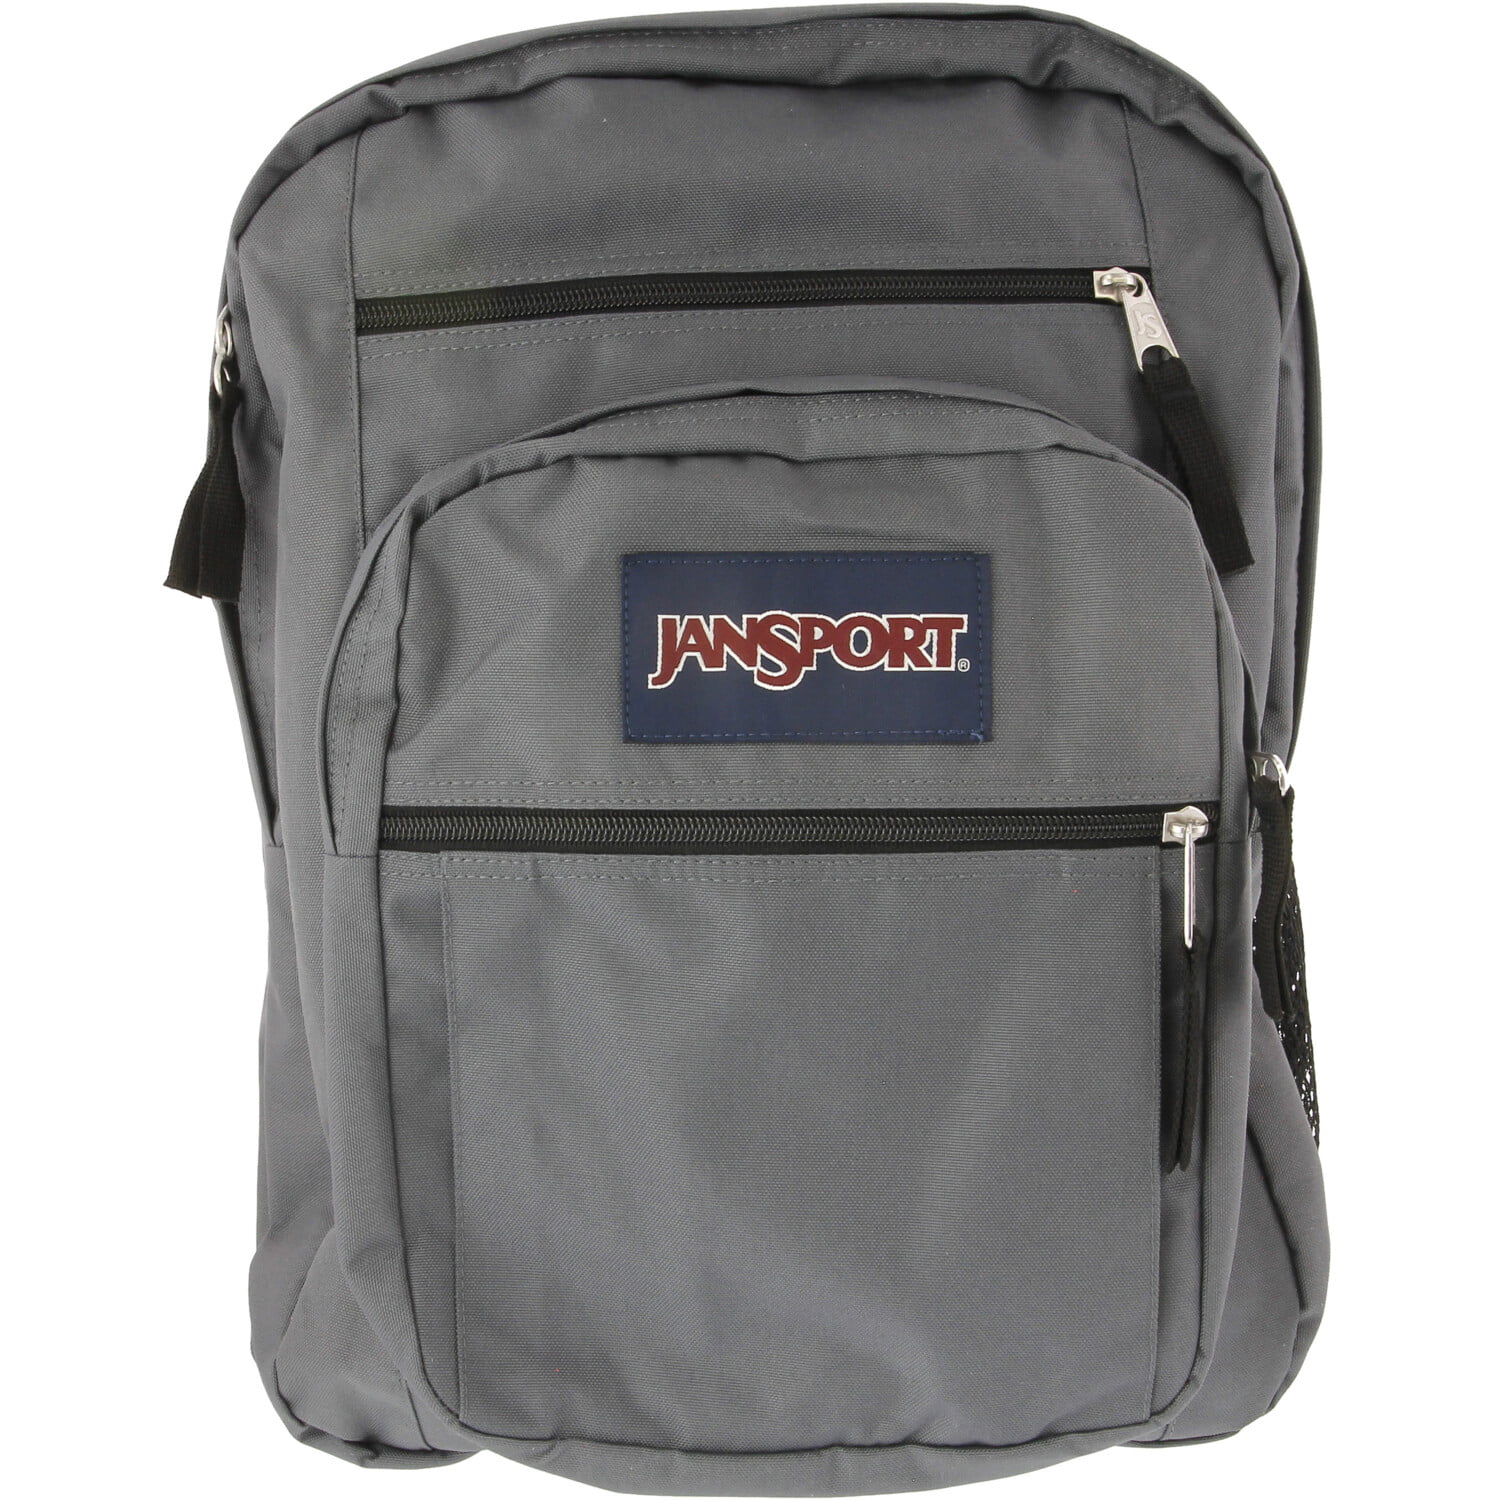 JanSport - Jansport Big Student Polyester Backpack - Deep Grey - 0 - 0